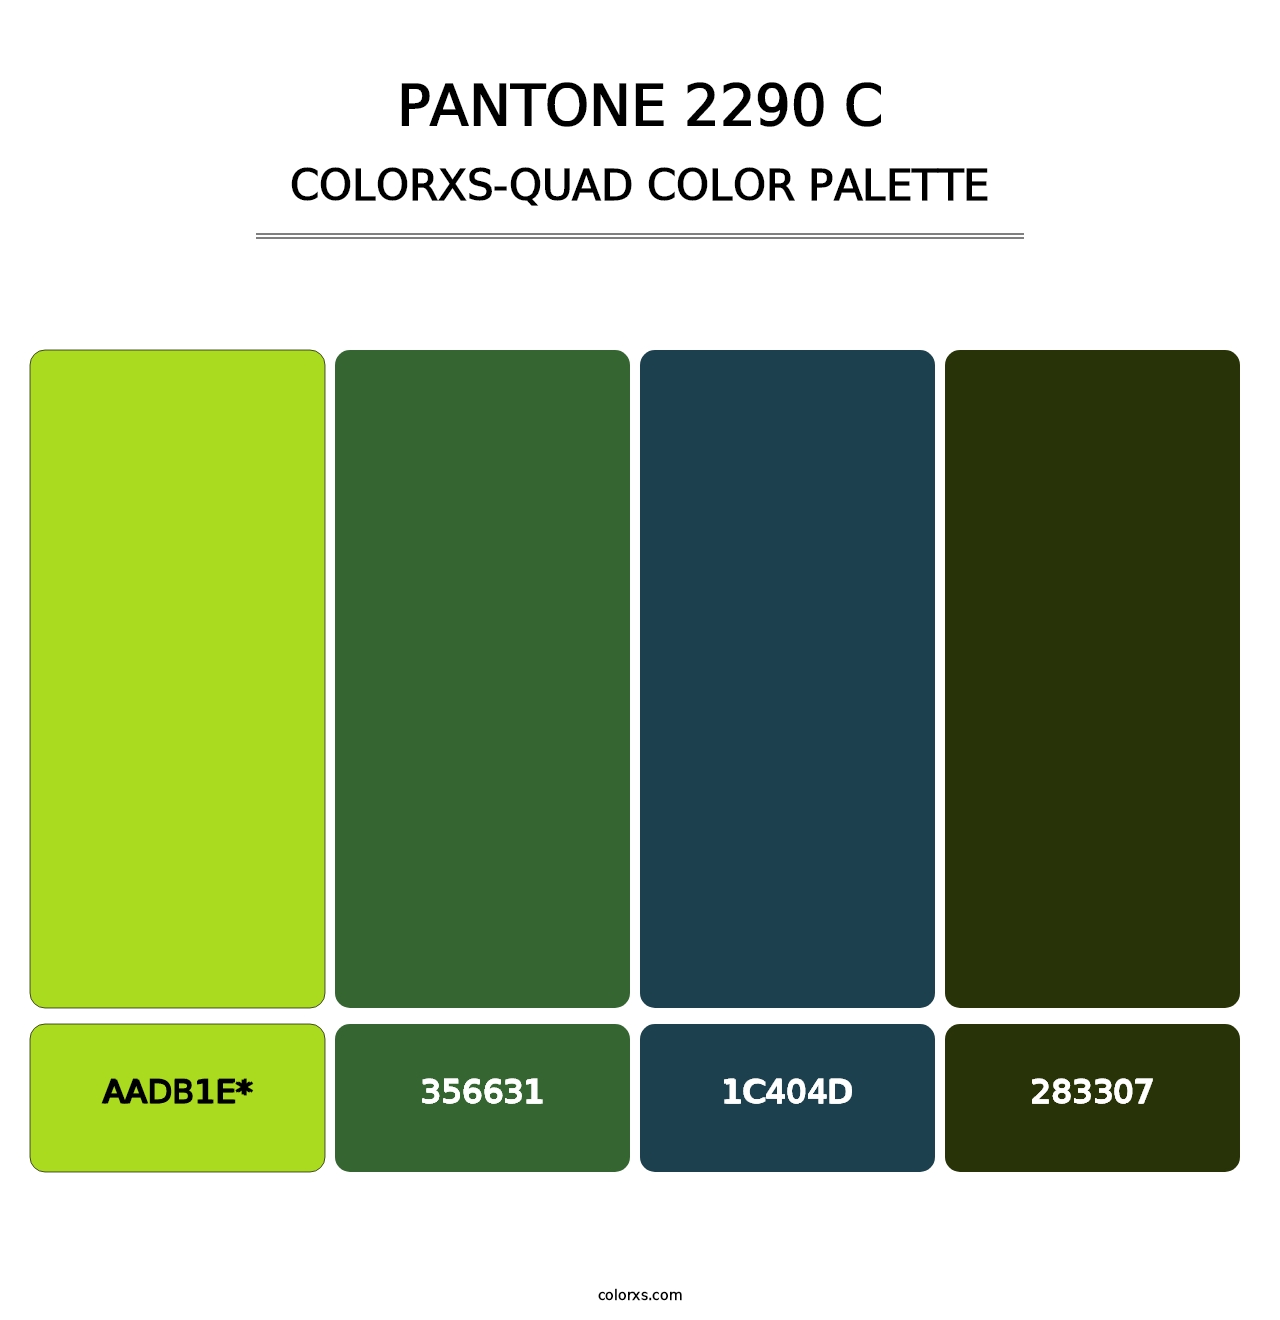 PANTONE 2290 C - Colorxs Quad Palette